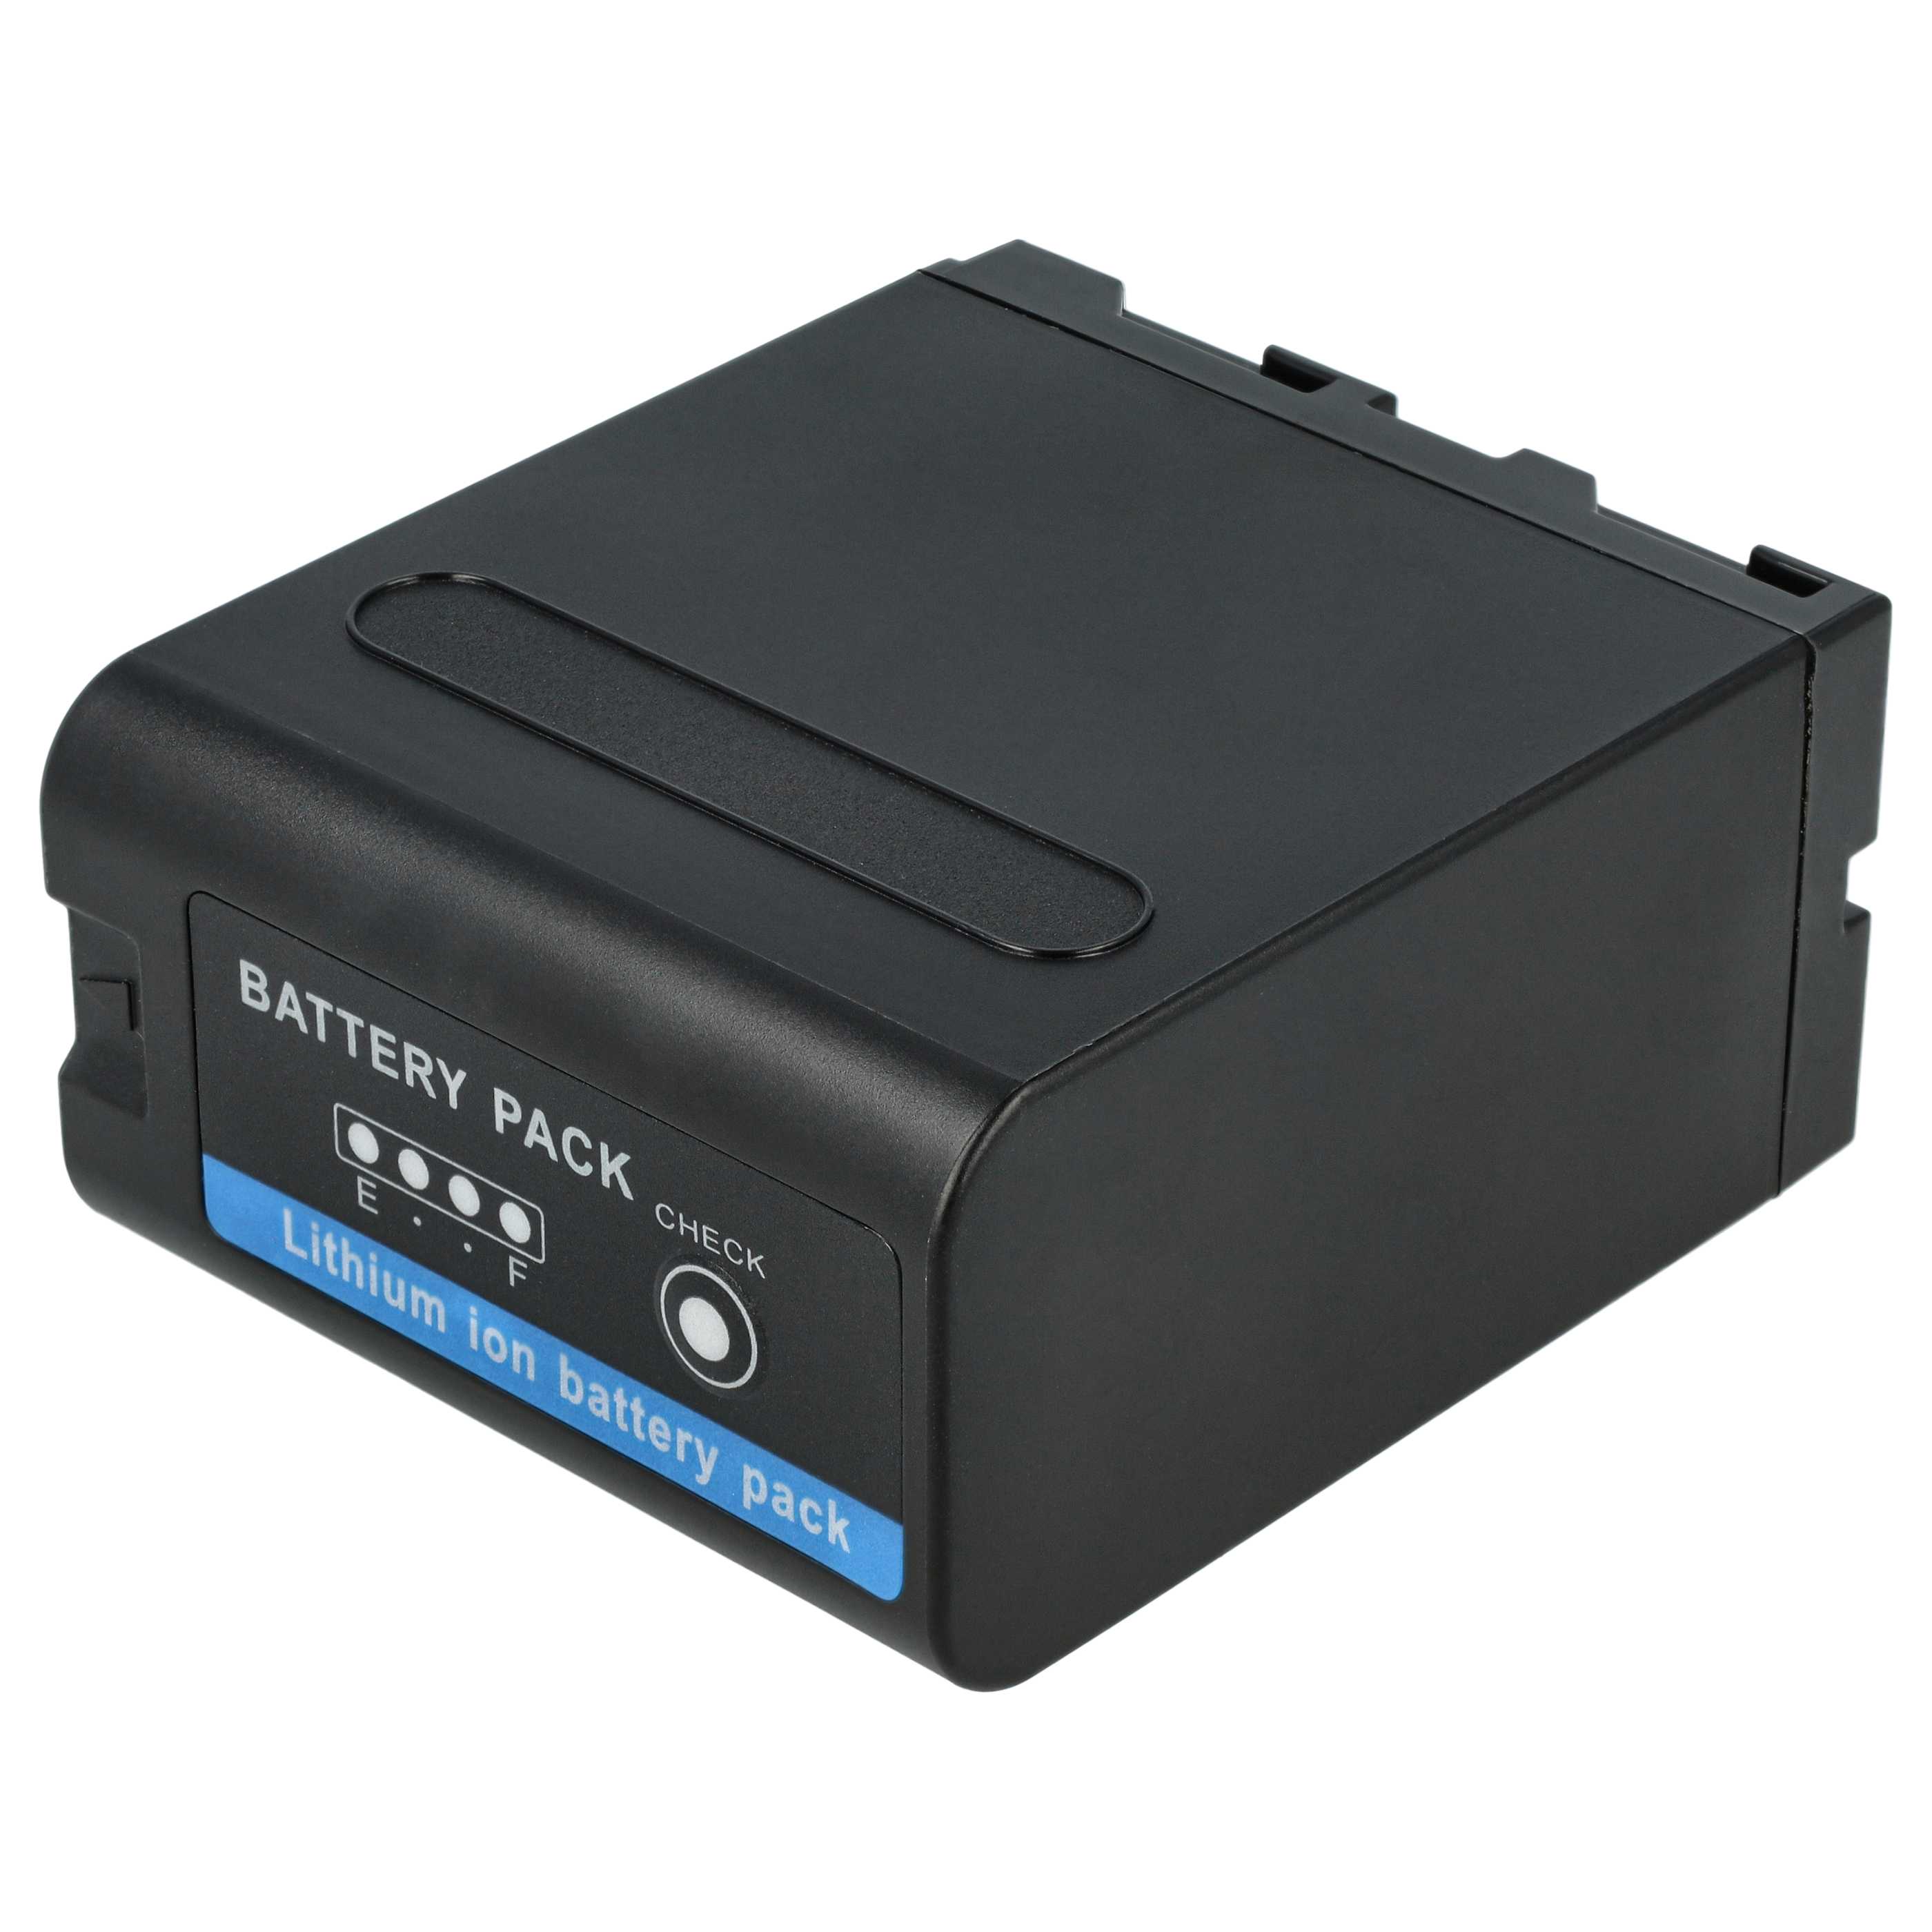 3x Batería reemplaza Sony NP-F930, NP-F990, NP-F970, NP-F960, NP-F950 para videocámara - 10400 mAh, 7,4 V